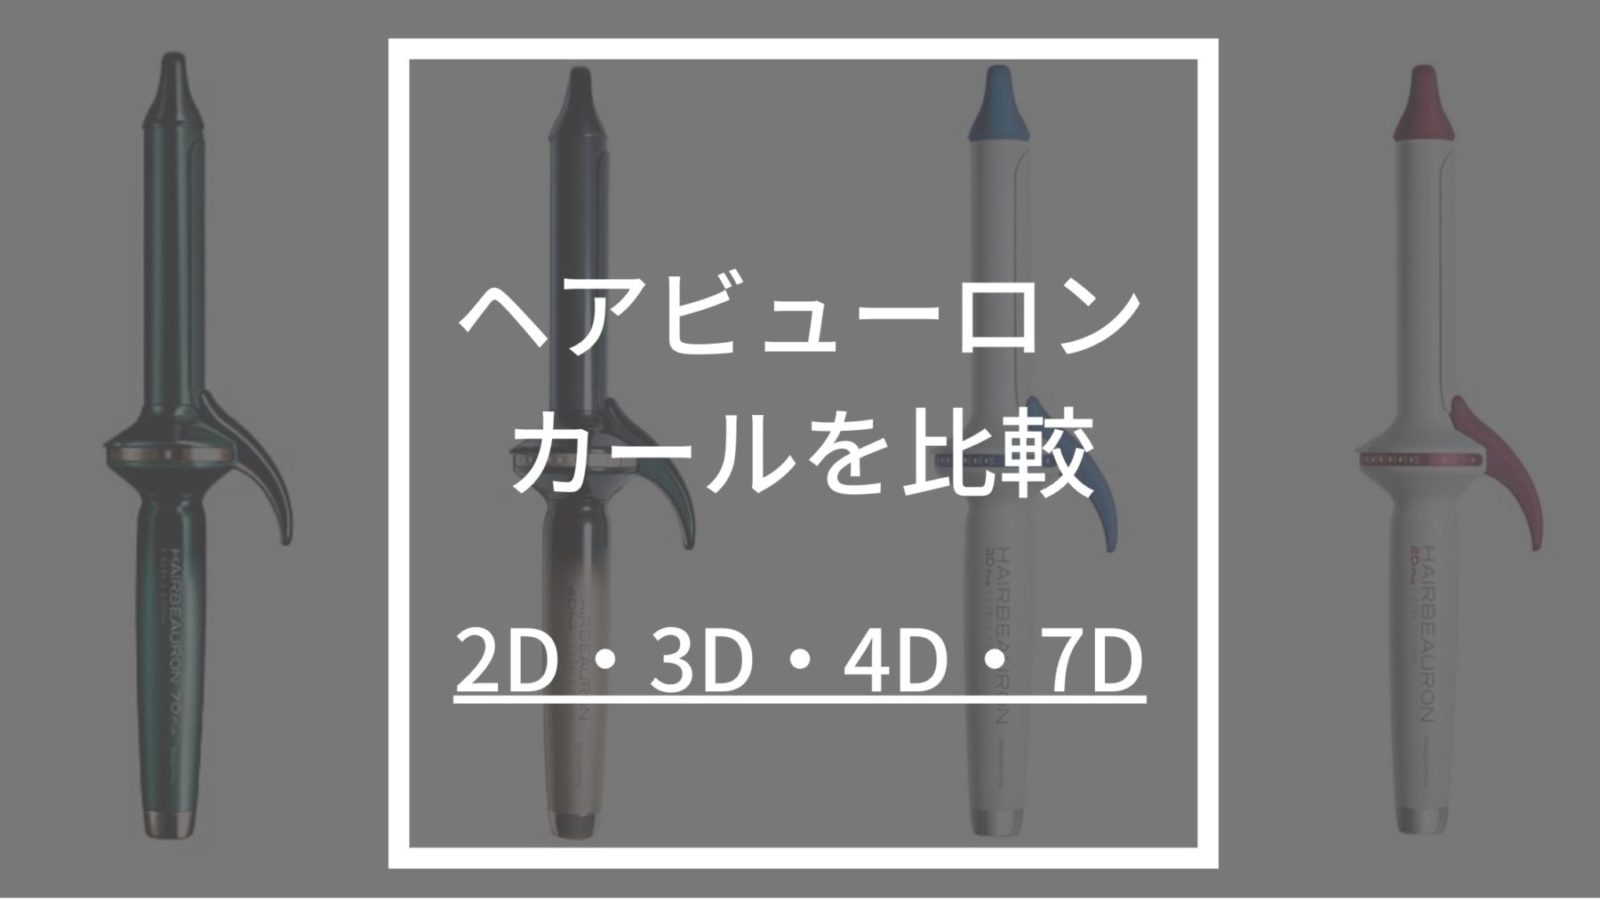 ヘアビューロン・コテ比較】2D・3D・4D・7Dの違いを美容師が解説